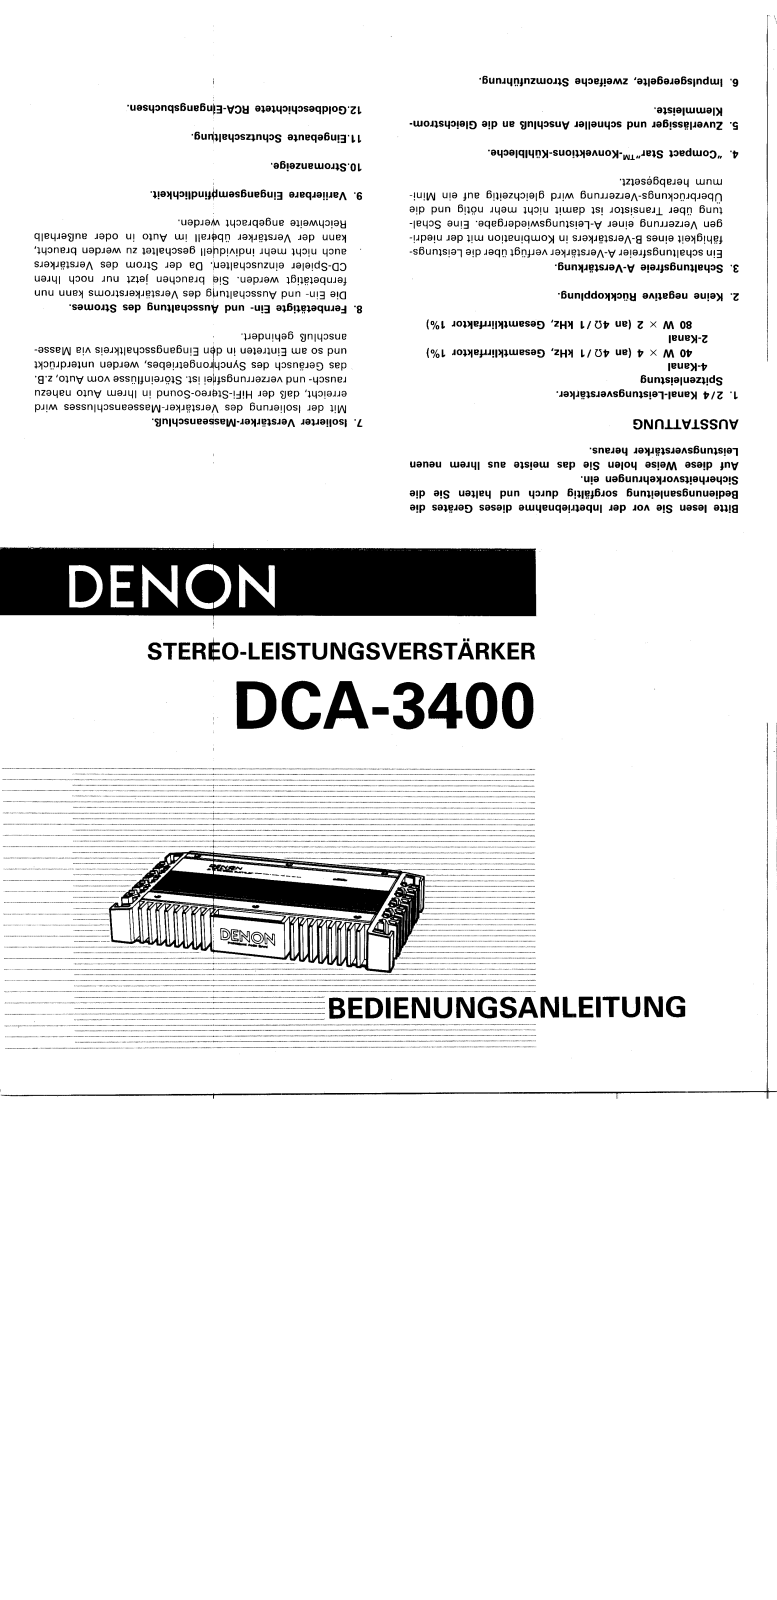 Denon DCA-3400 Owner's Manual